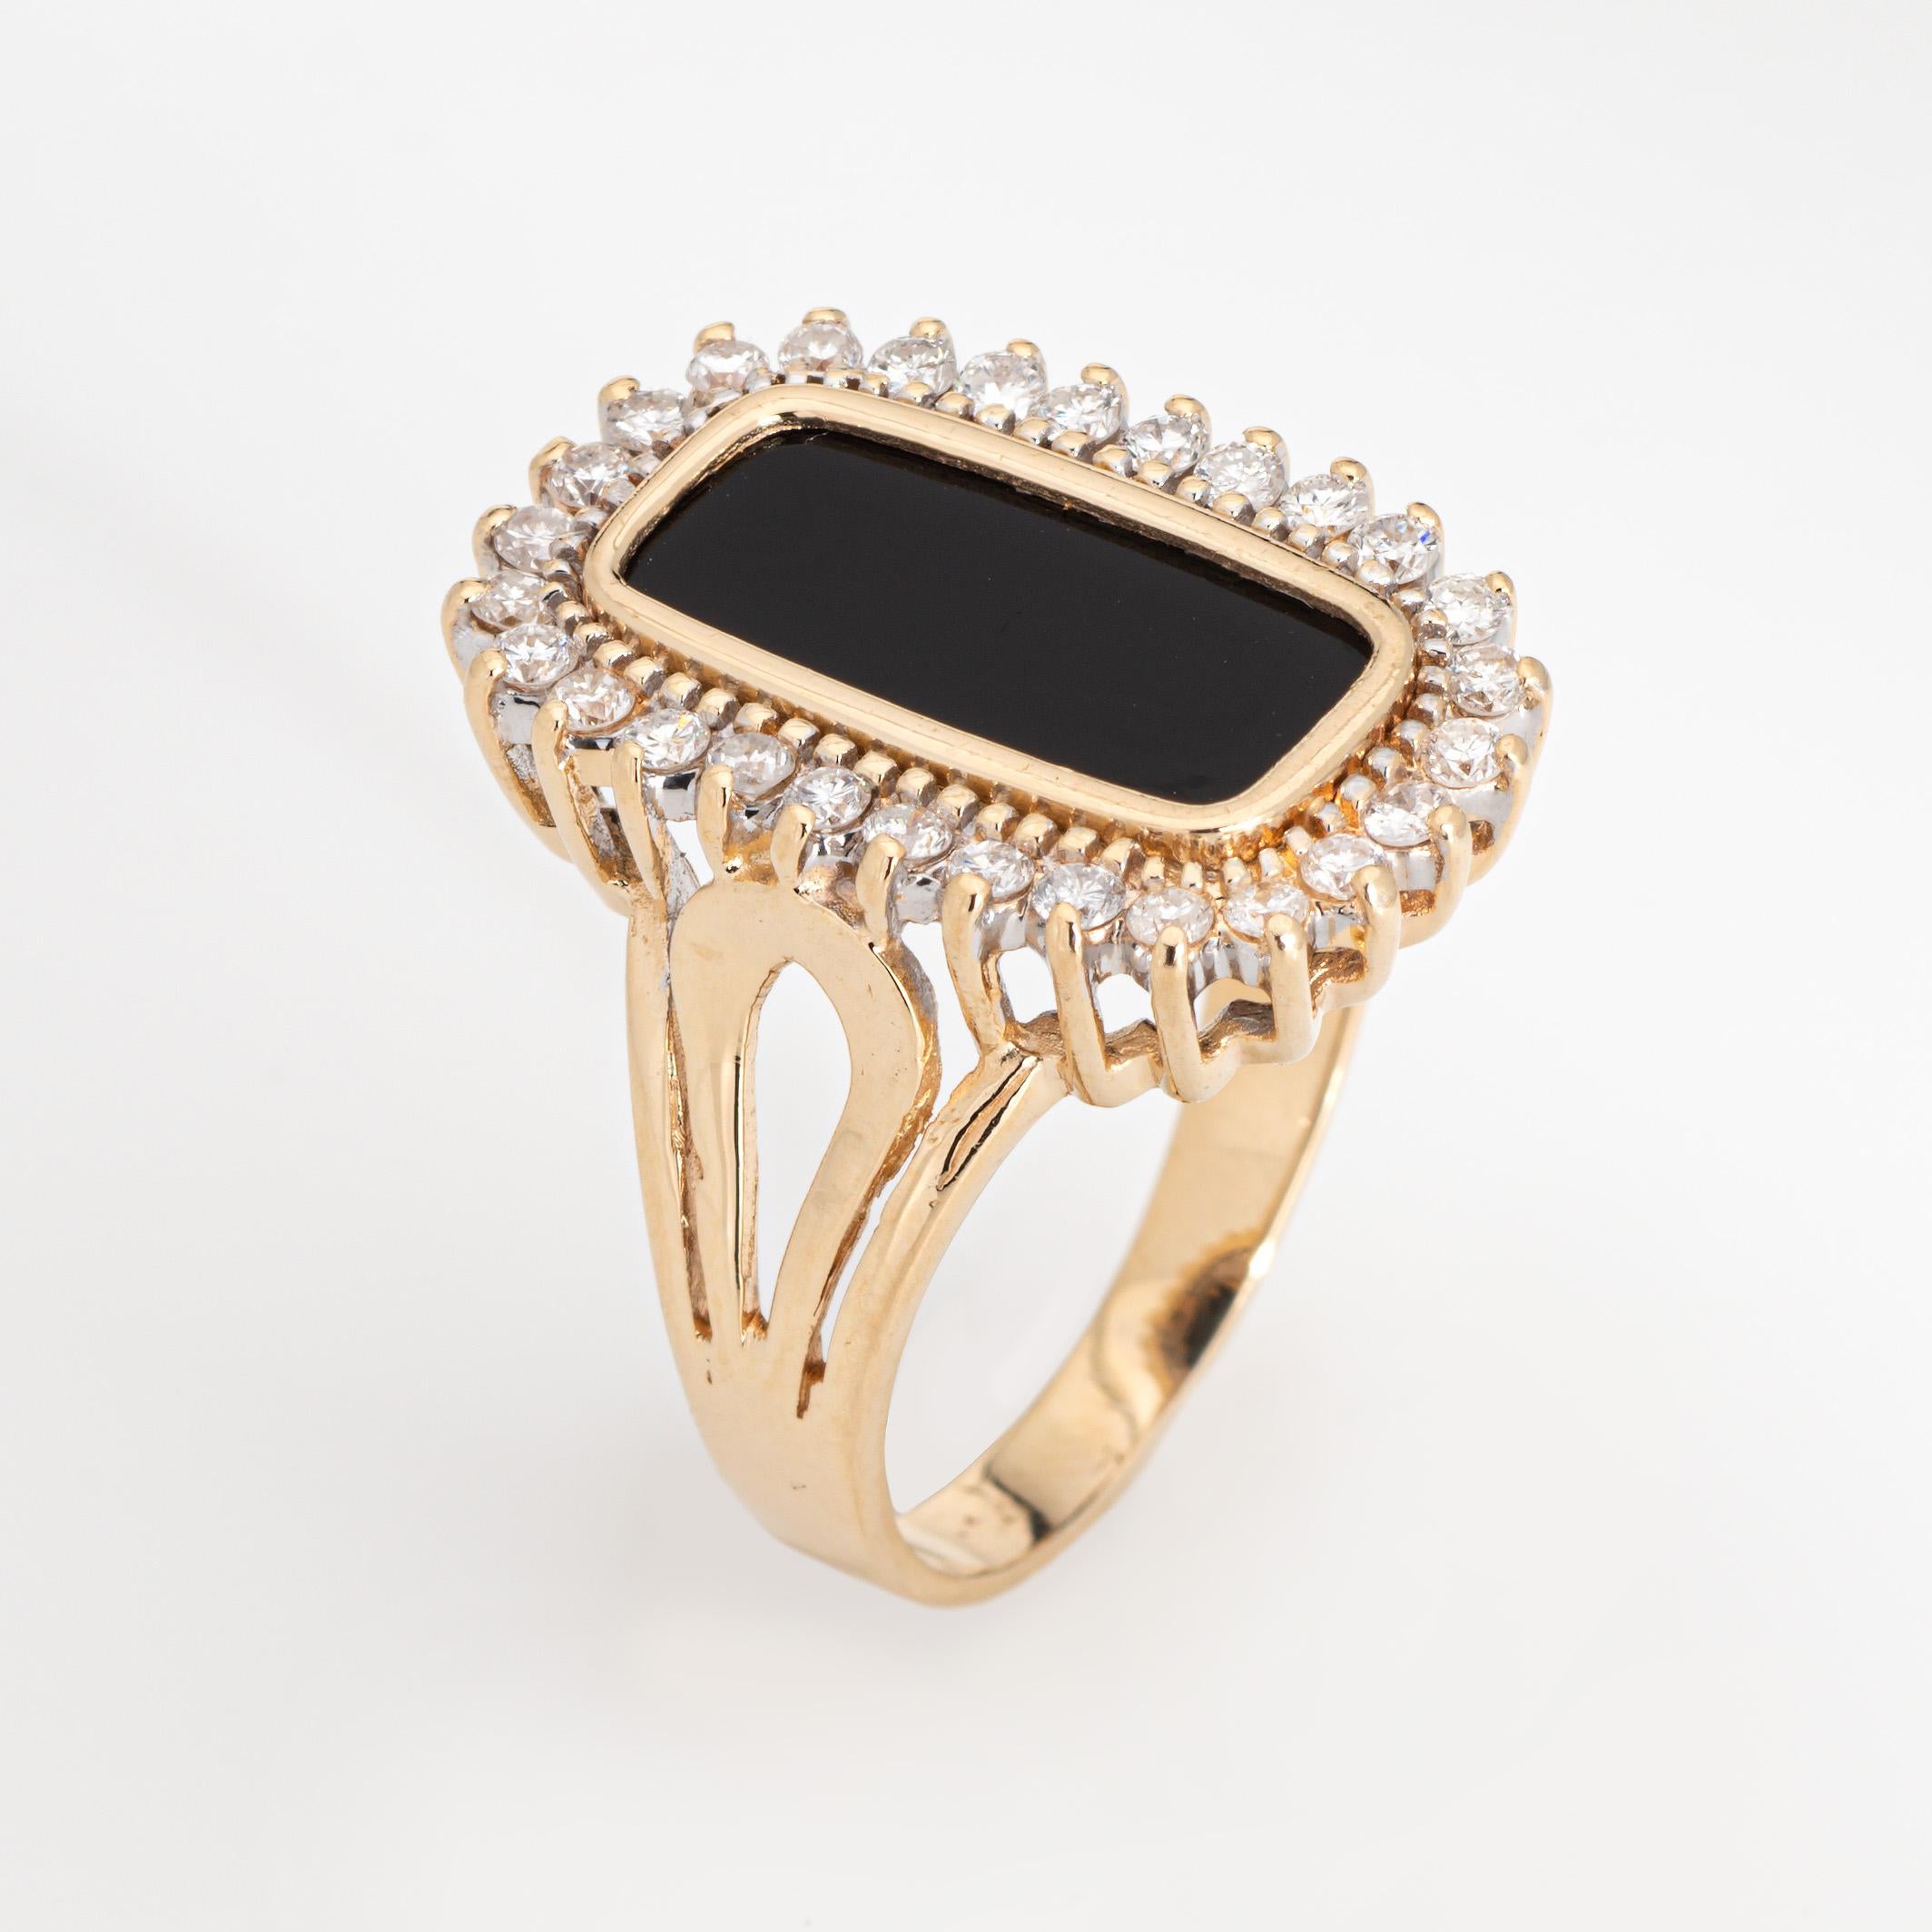 Stilvoller Ring aus 14-karätigem Gelbgold mit Onyx und Diamanten (ca. 1970er bis 1980er Jahre). 

Die Diamanten haben insgesamt schätzungsweise 0,30 Karat (geschätzte Farbe H-I und Reinheit SI1-I1). Onyx misst 14mm x 6mm. Der Onyx ist in sehr gutem